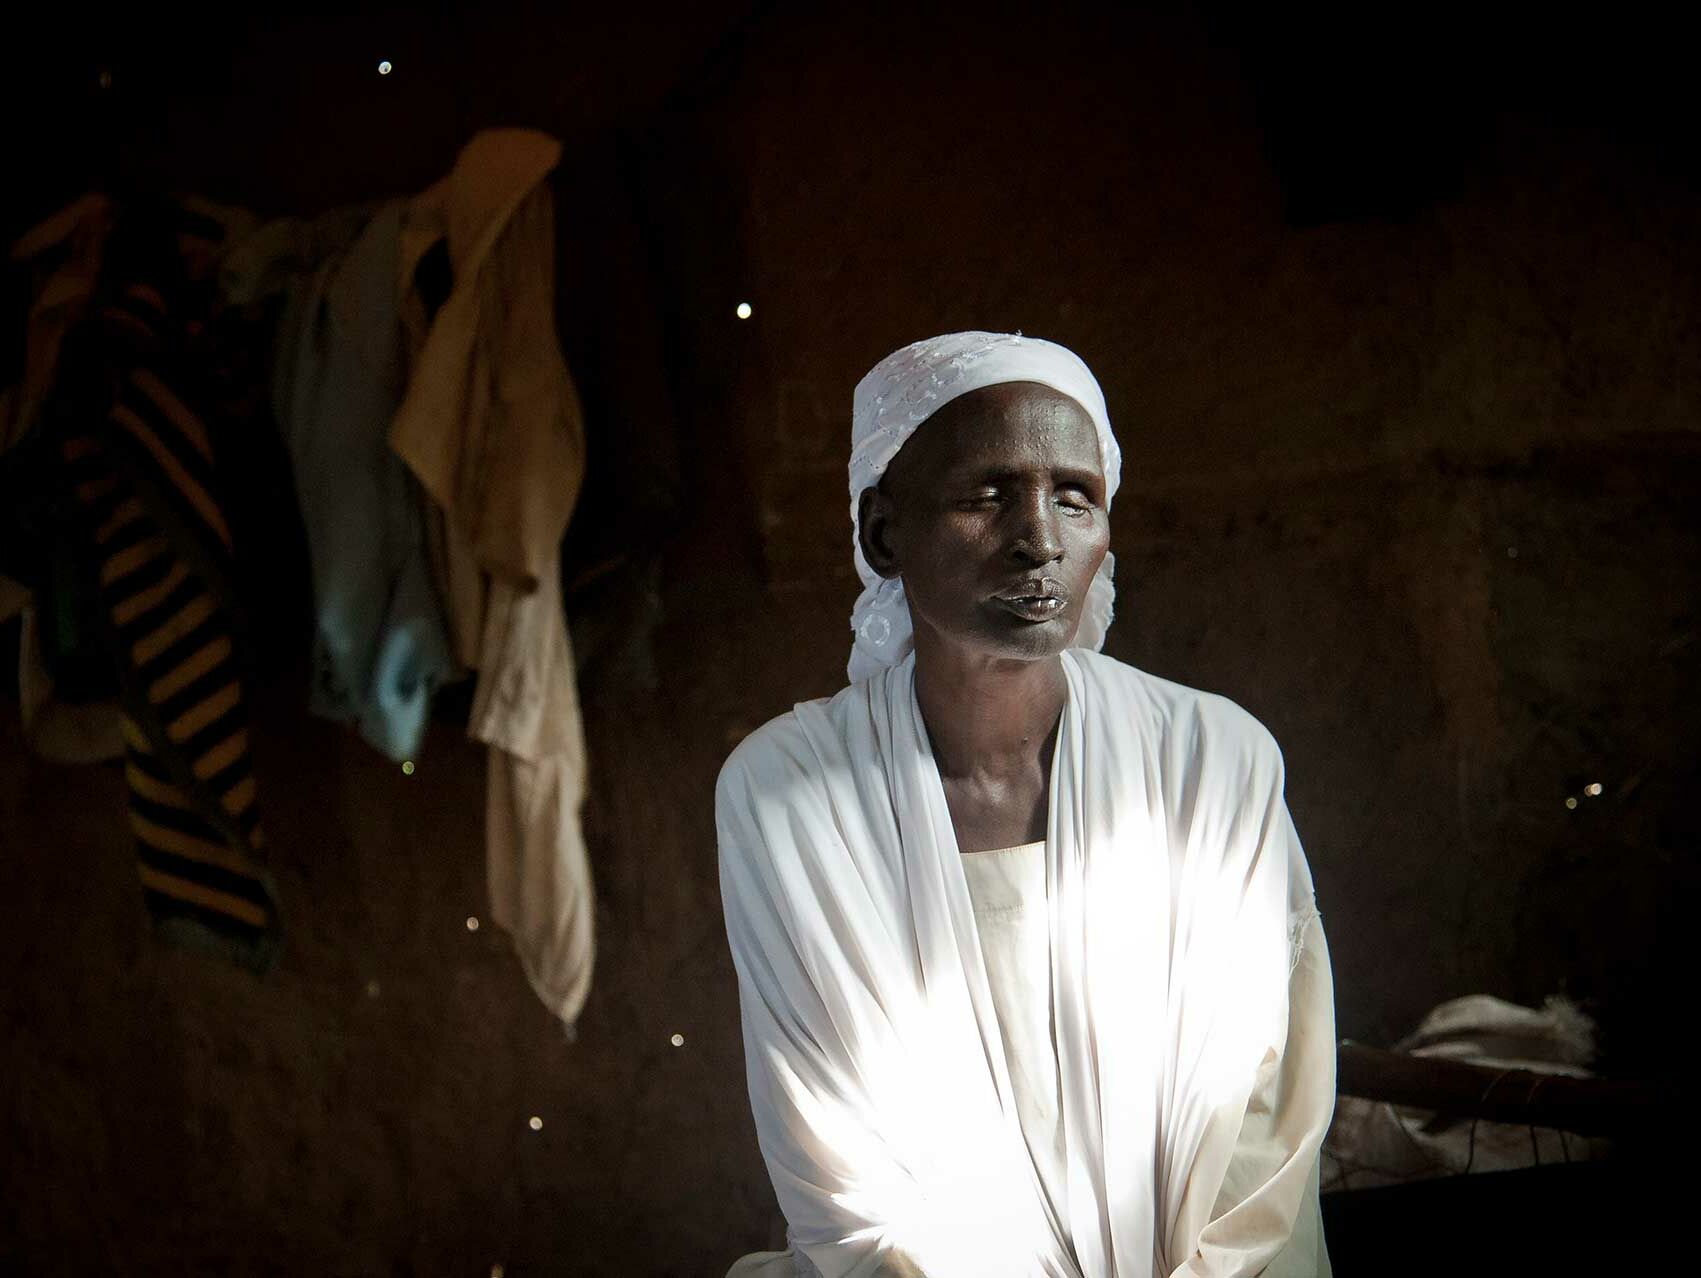 Nyantay stolperte blind und allein durch den Wald um den Kämpfen im Südsudan zu entgehen. Foto: UNHCR/C.Tijerina